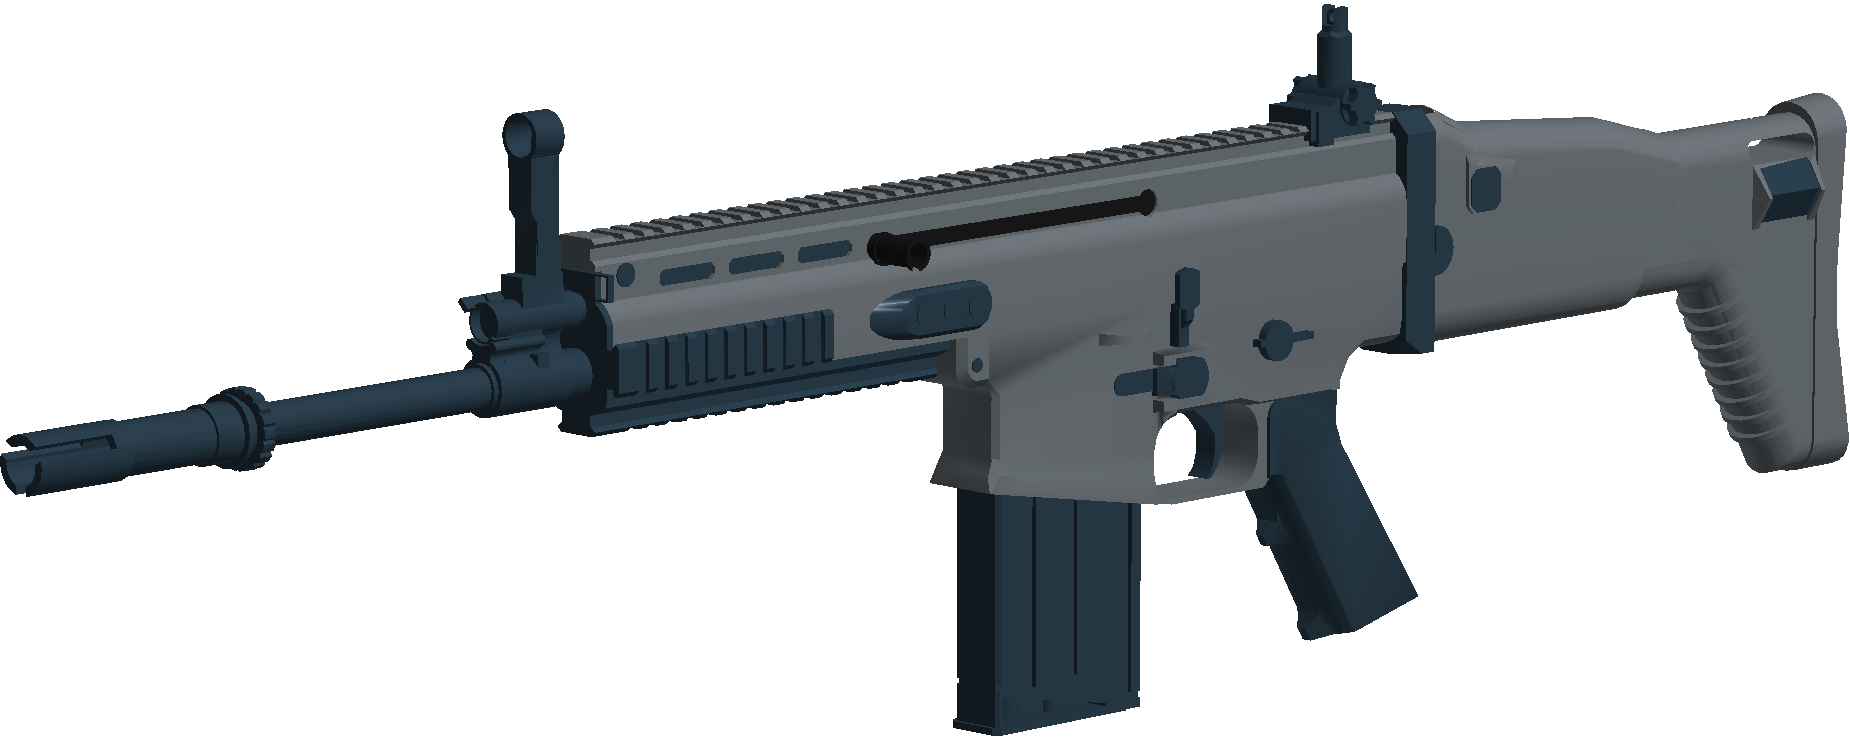 Scar H Phantom Forces Wiki Fandom - roblox scar gun